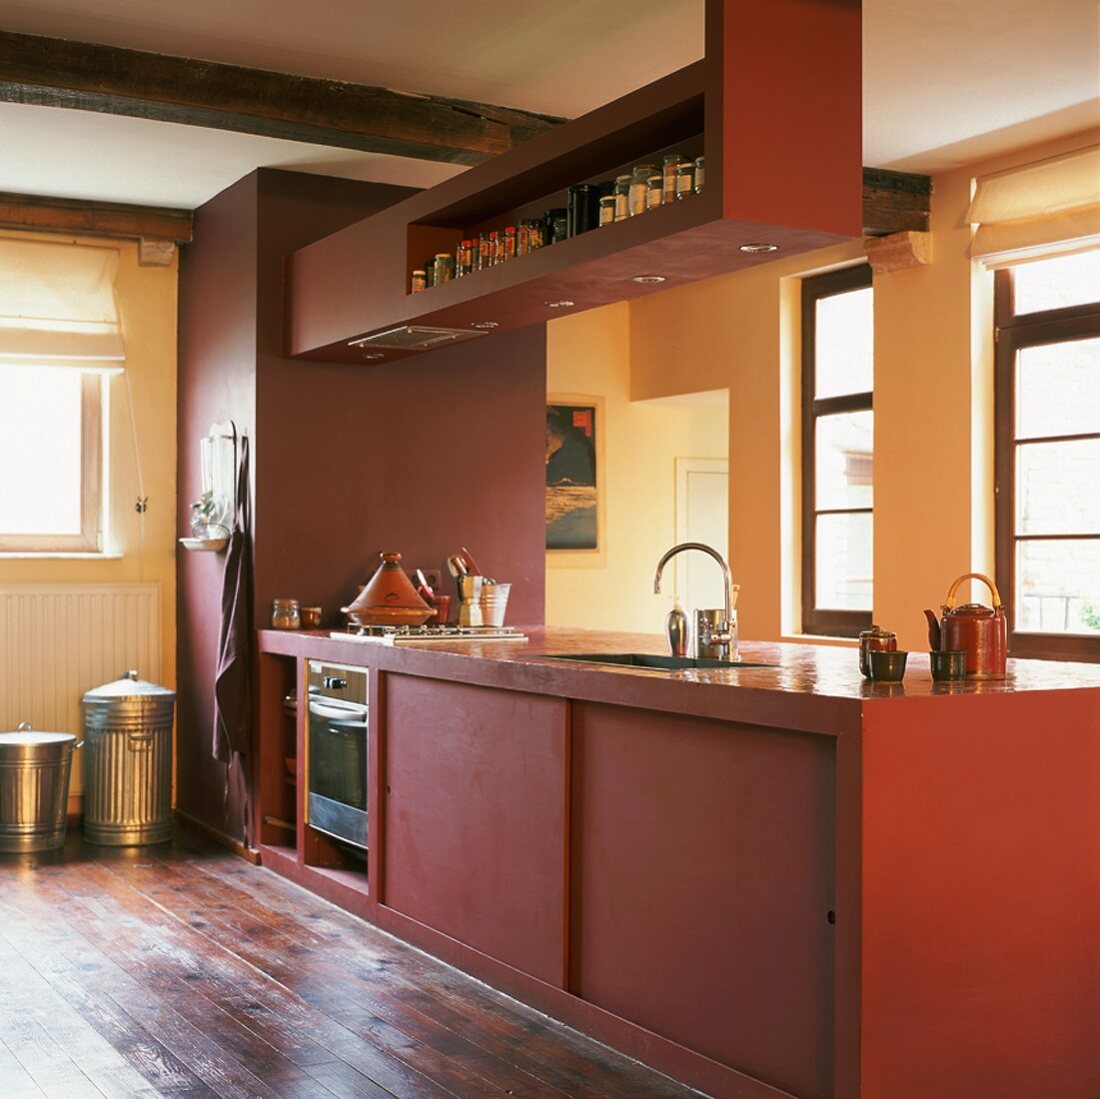 Freistehende, kubische Küchenzeile in Rot in rustikalem Ambiente mit Deckenbalken und Dielenboden